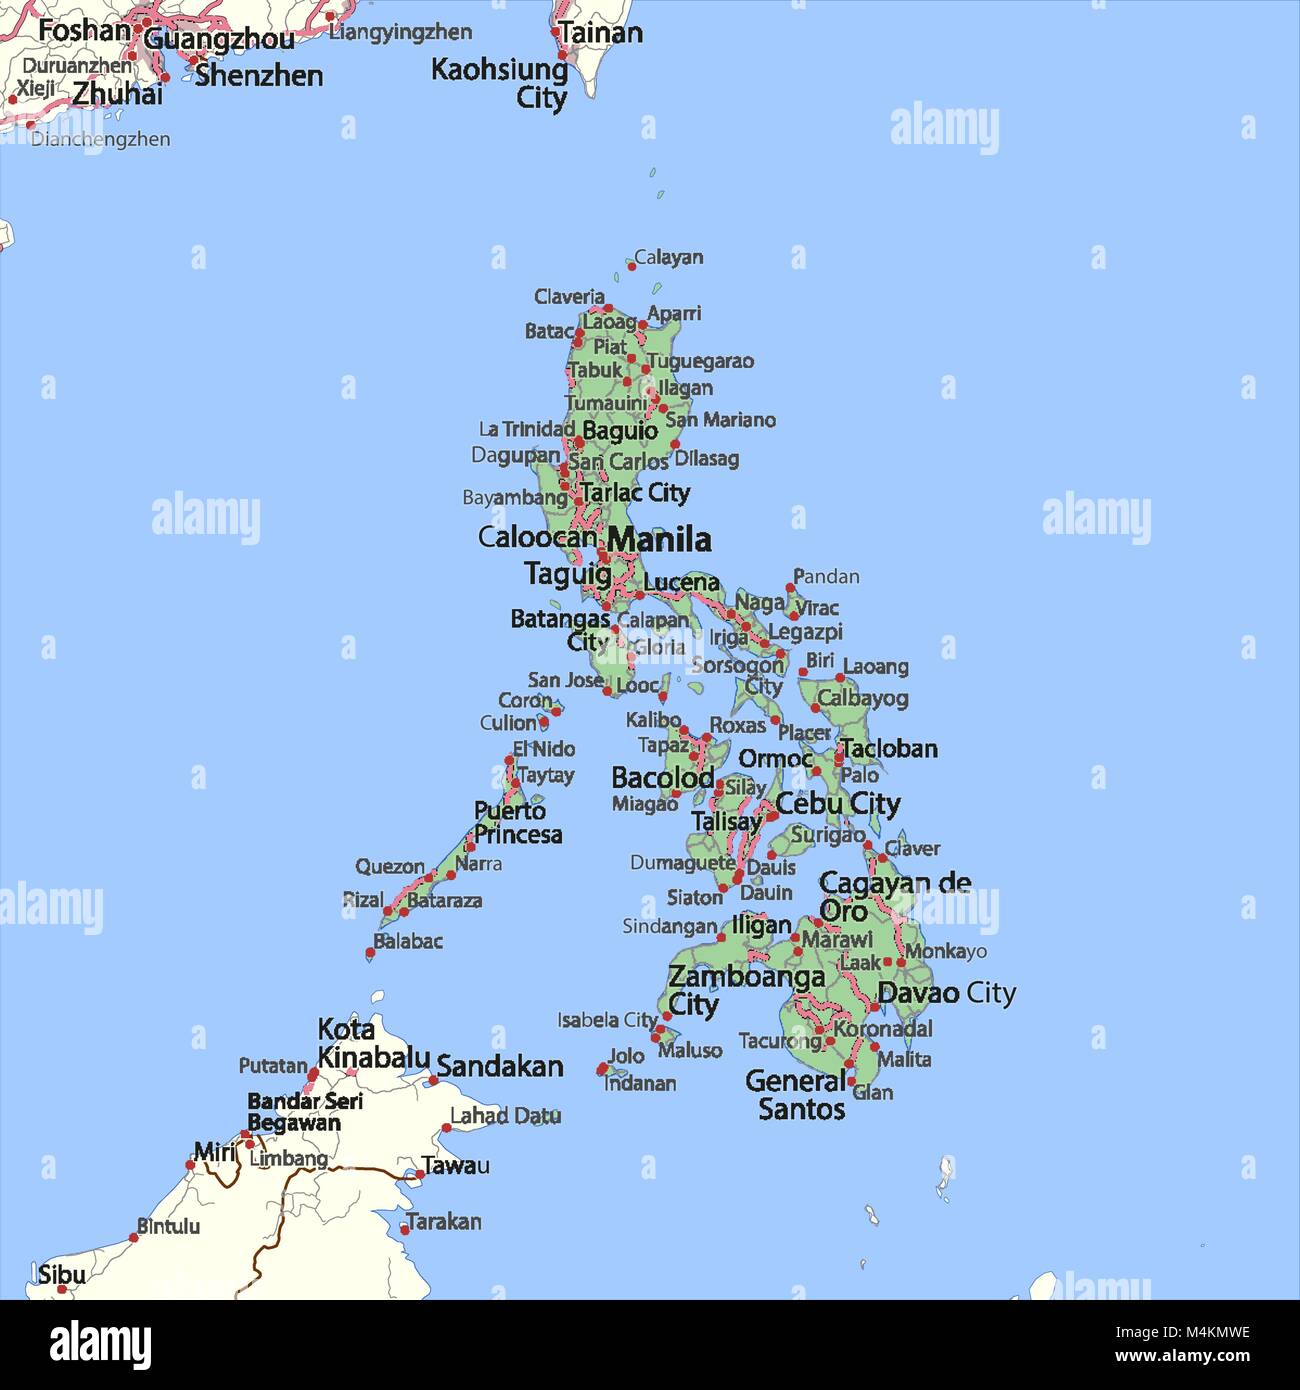 Mappa di Filippine. Mostra i confini, zone urbane, nomi di località e strade. Le etichette in inglese dove possibile. Proiezione: proiezione di Mercatore. Illustrazione Vettoriale